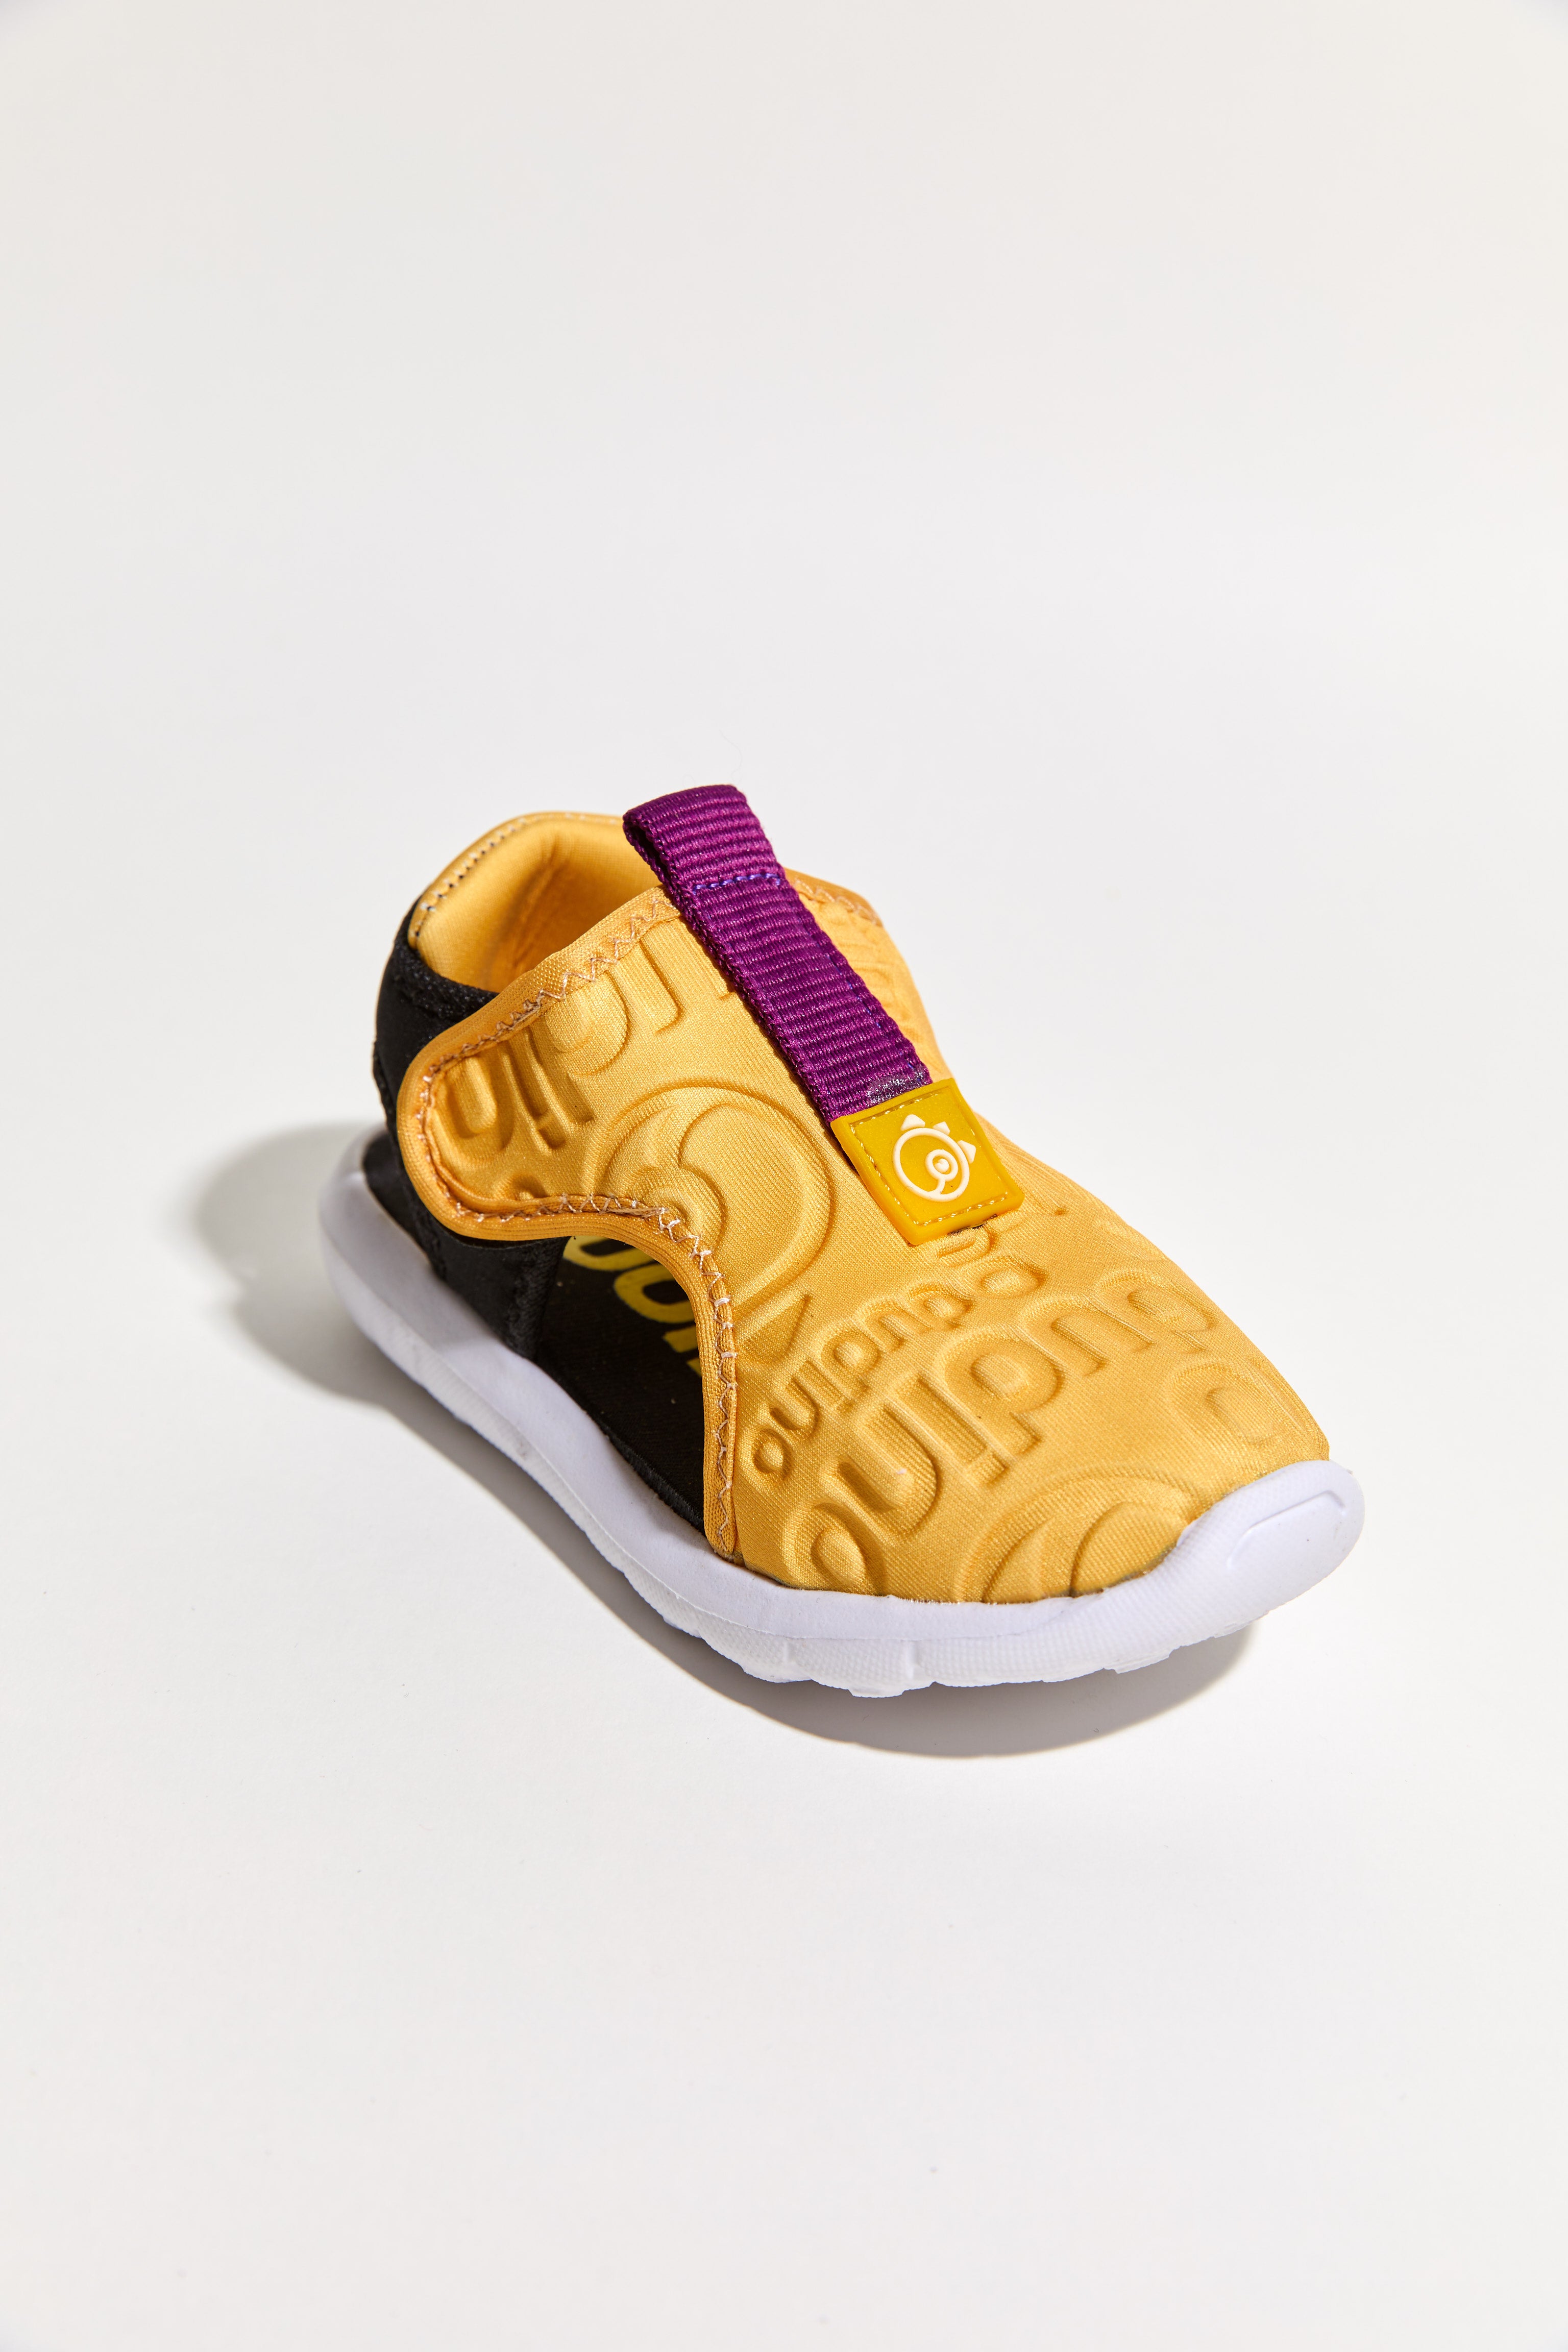 Shell Easy-Wear Kids Shoes